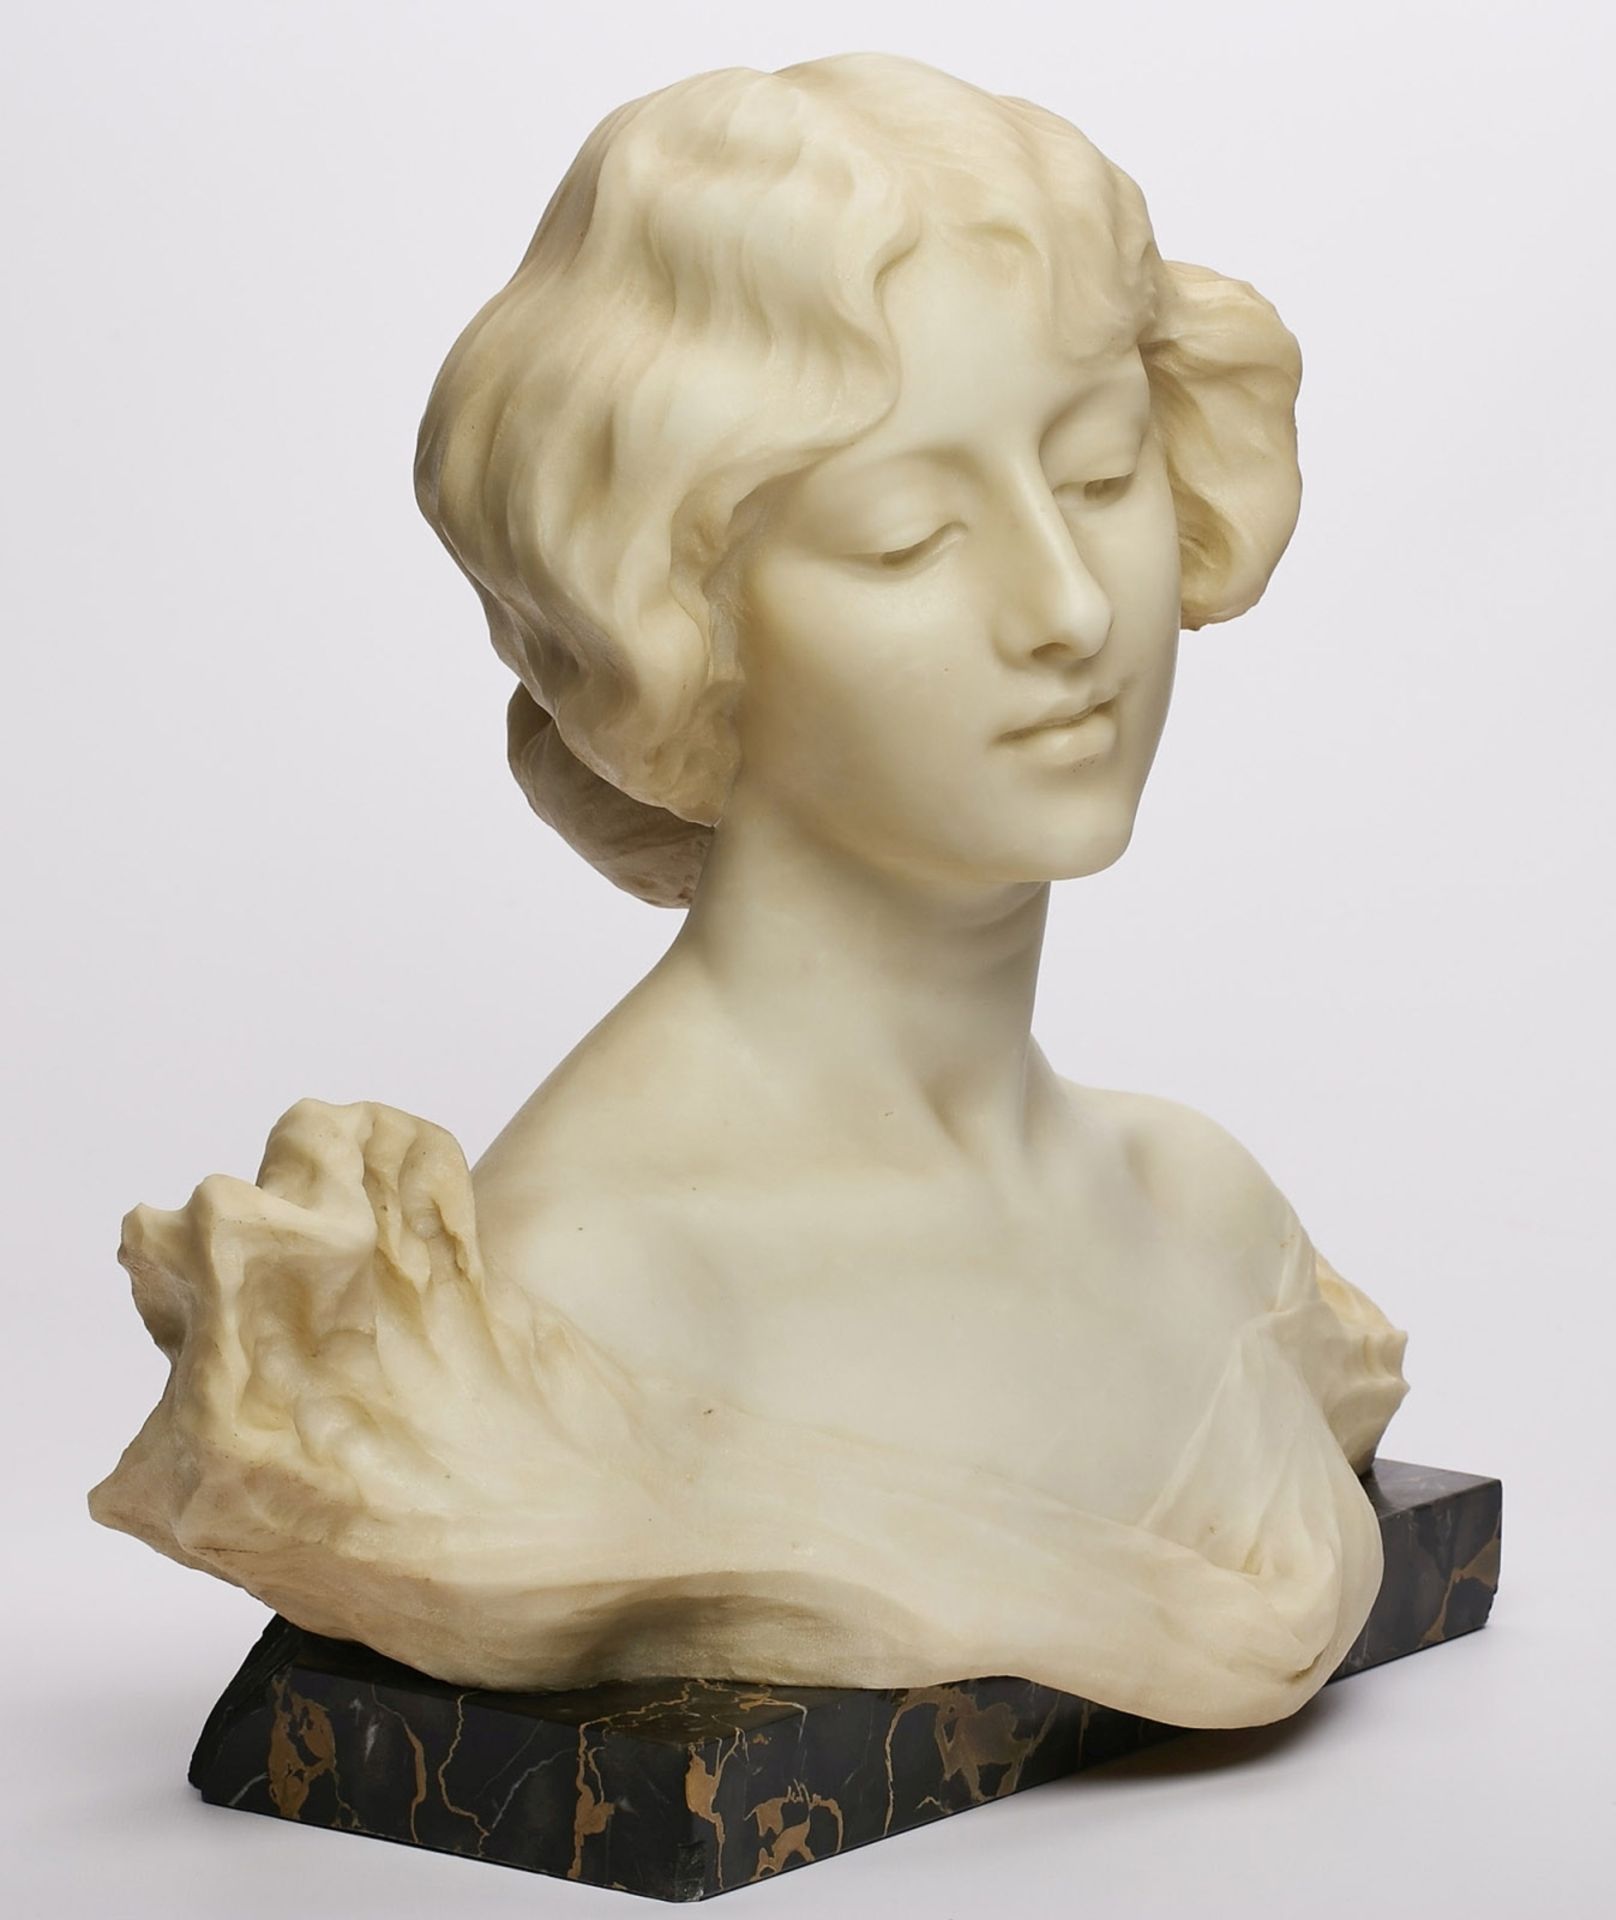 Gr. Büste "Junge Frau mit hochgestecktem Haar", Jugendstil, wohl Italien um 1900. - Bild 2 aus 2